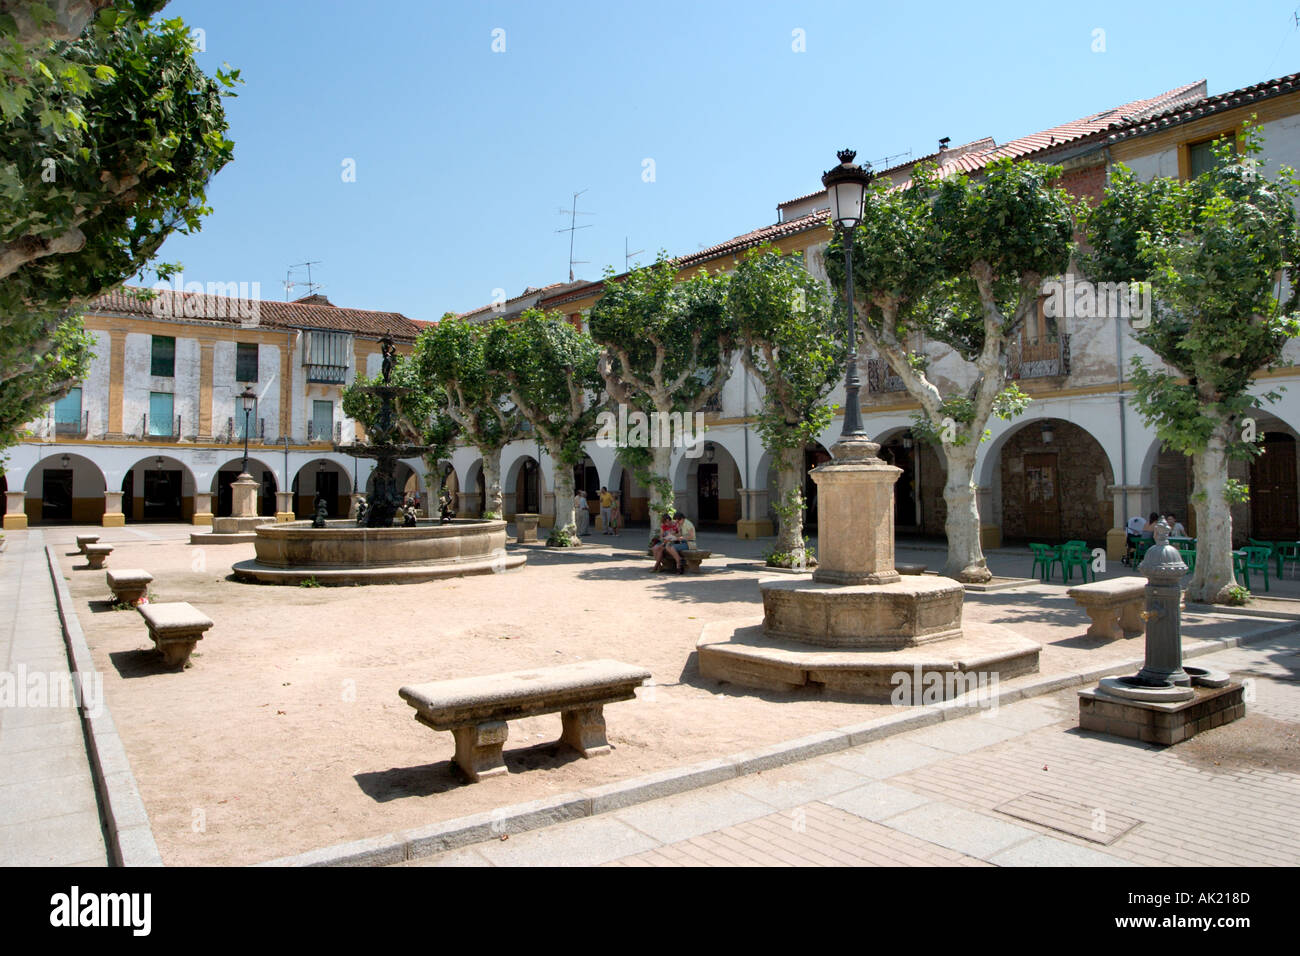 Plaza del Buen Alcalde, Ciudad Rodrigo, Castilla y Leon, Spain Stock Photo